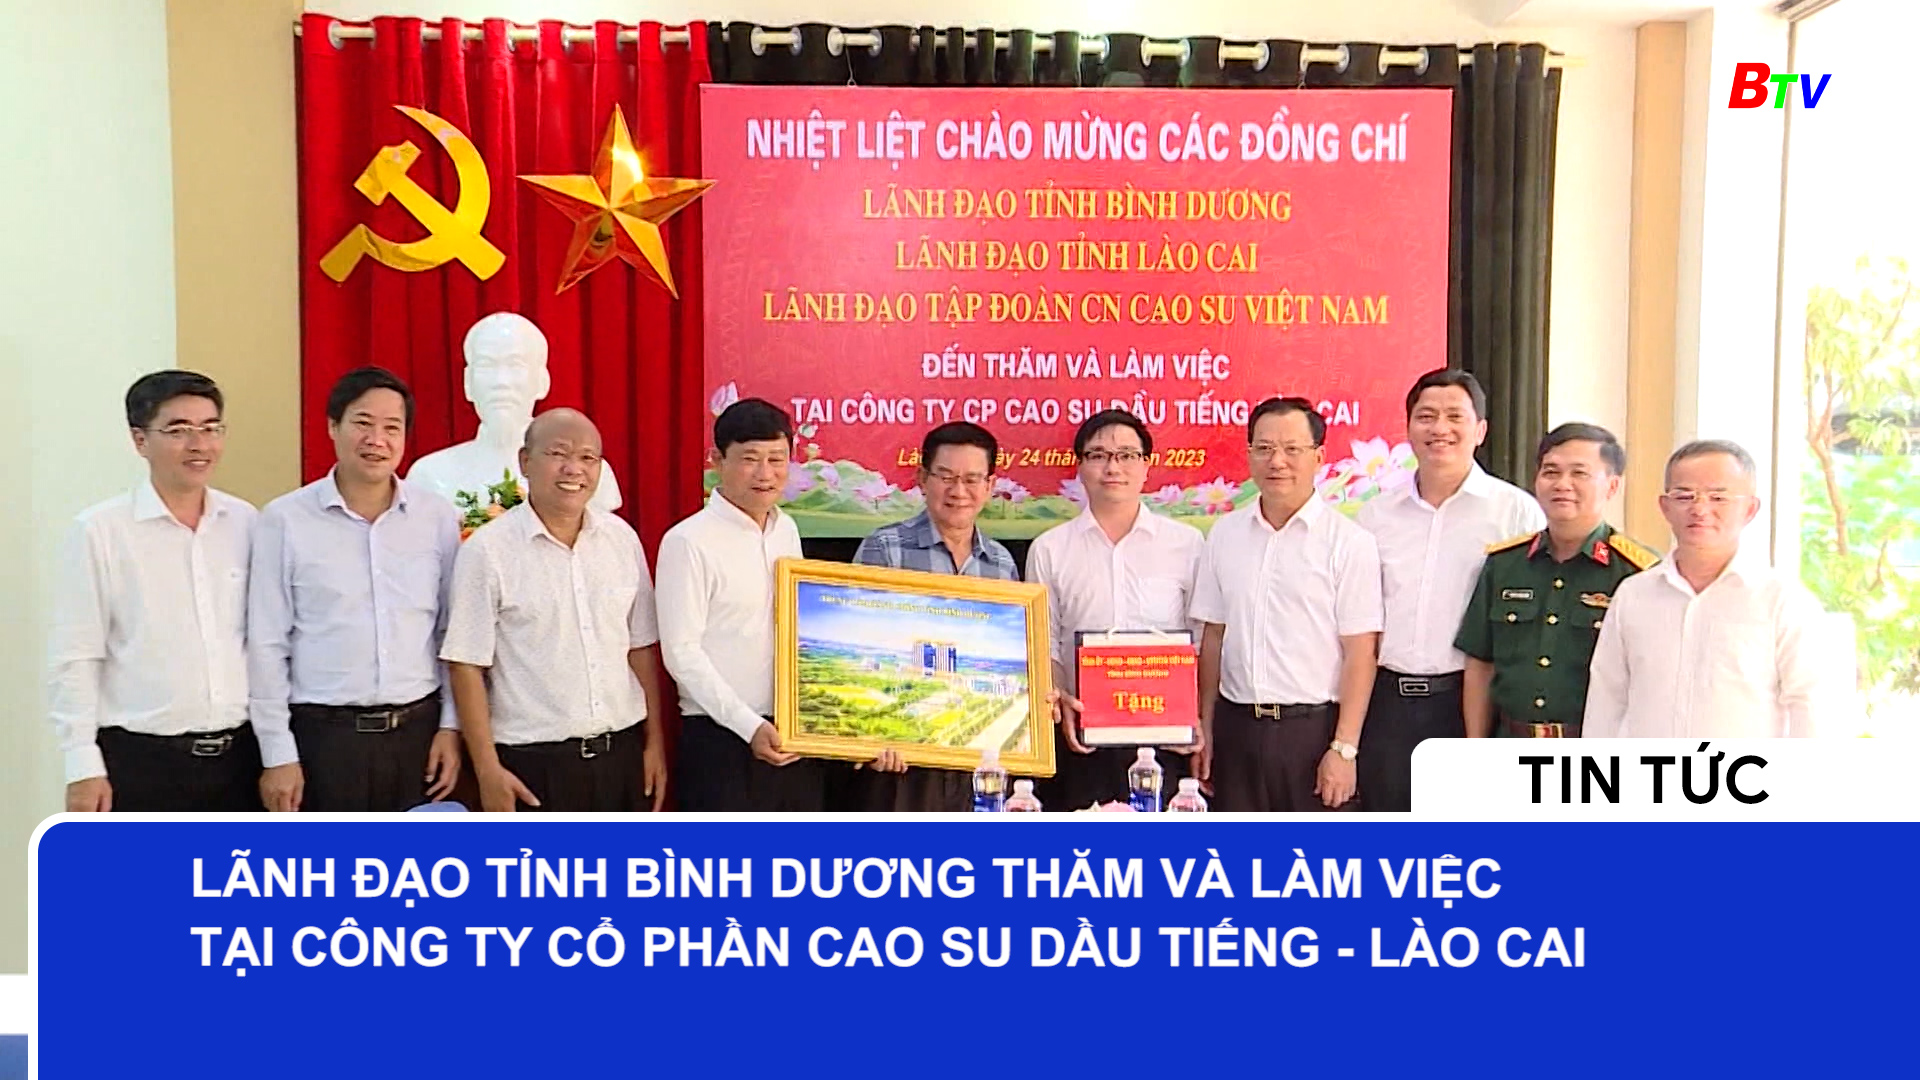 Lãnh đạo tỉnh Bình Dương thăm và làm việc tại Công ty Cổ phần Cao su Dầu Tiếng - Lào Cai